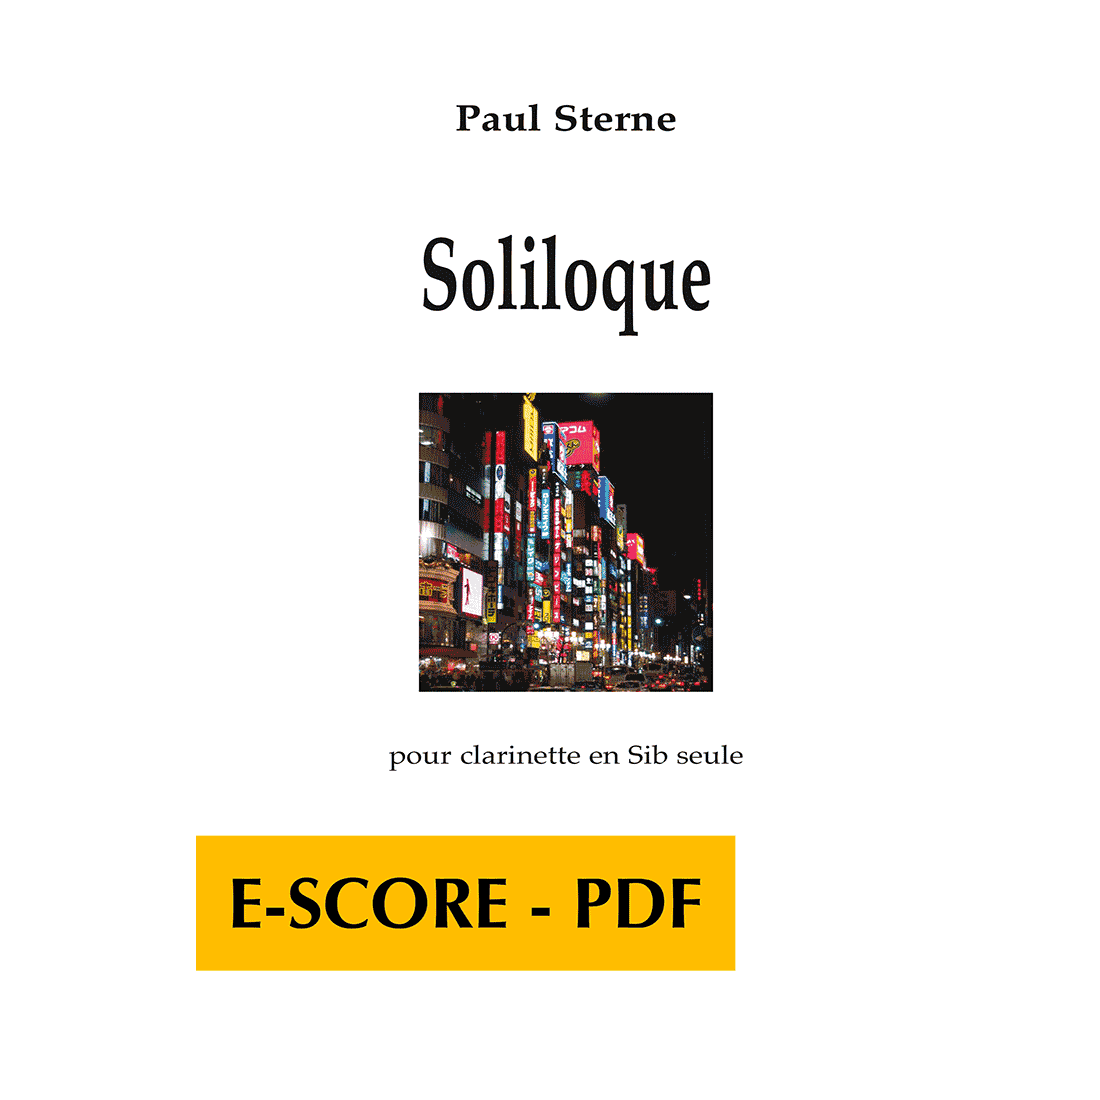 Soliloque for clarinet solo - E-score PDF